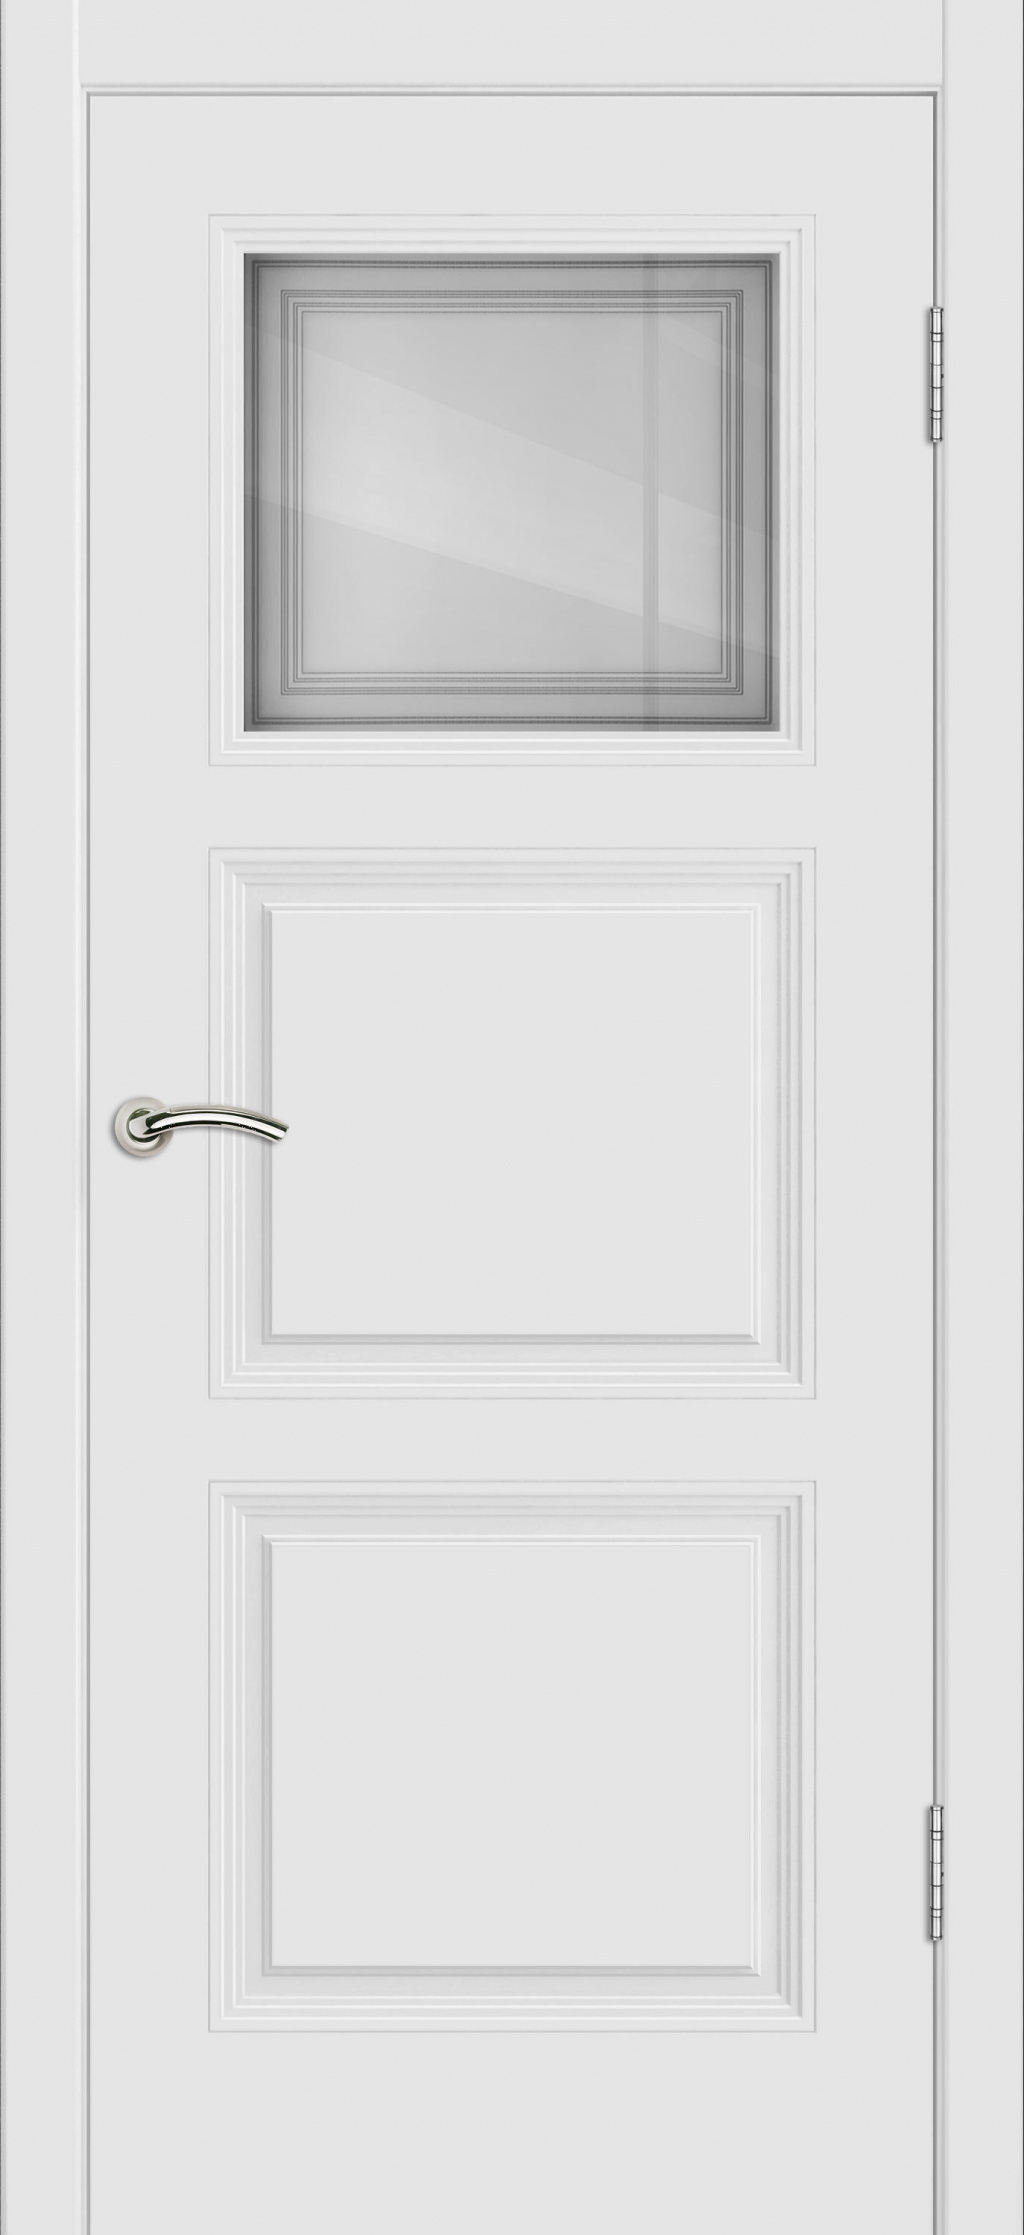 Cordondoor Межкомнатная дверь Vision 3 ПО Узор 1-1, арт. 19309 - фото №2